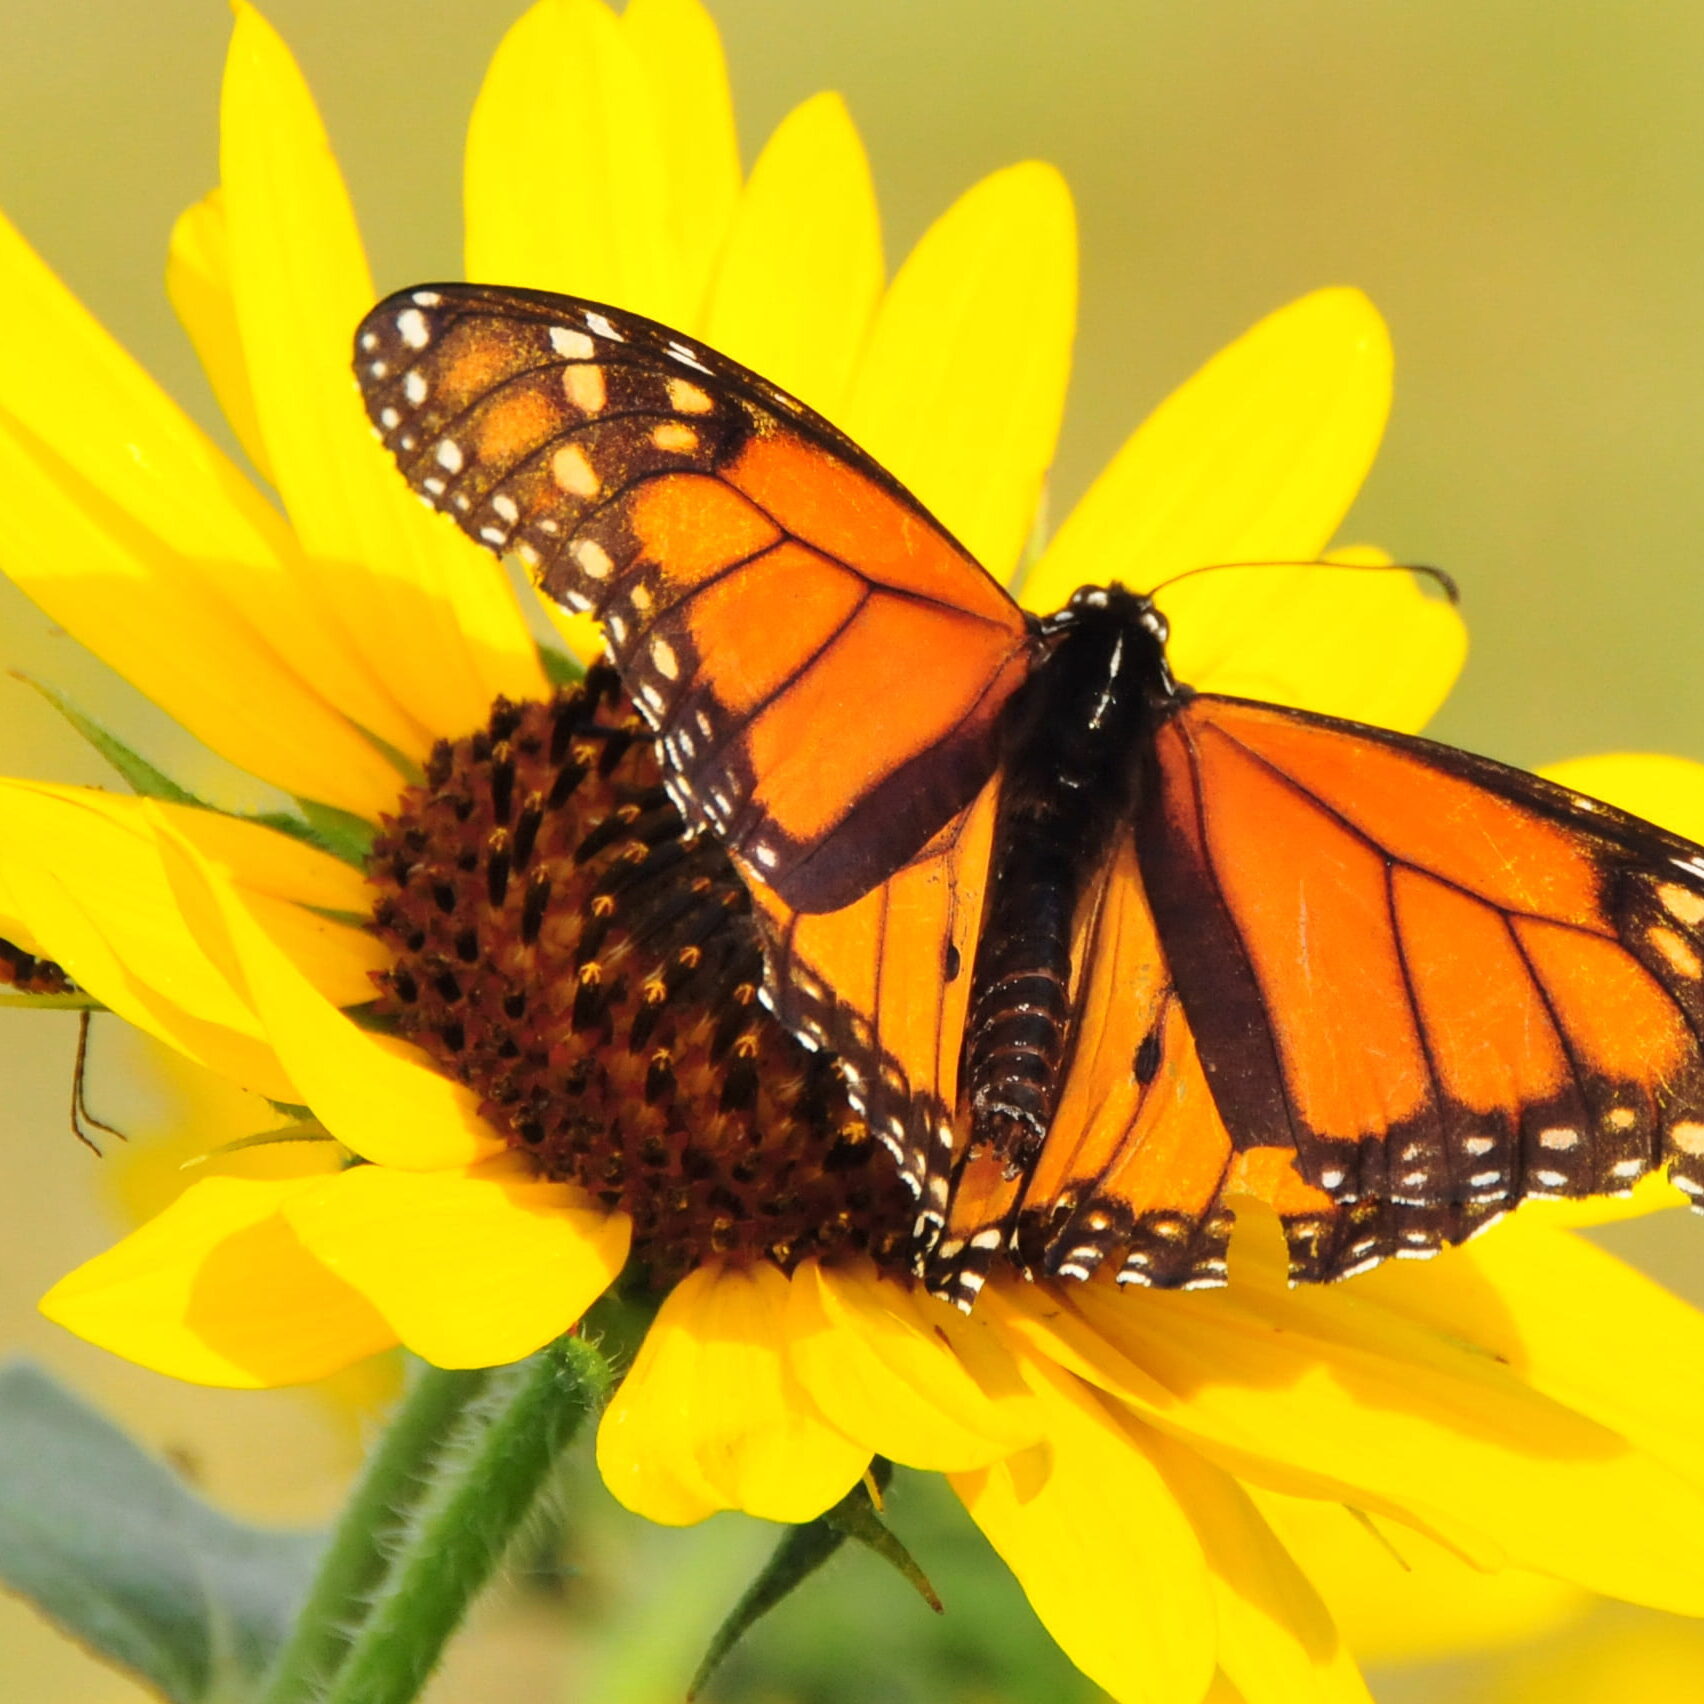 plains-sunflower-nwr-monarch-butterfly-wallpaper